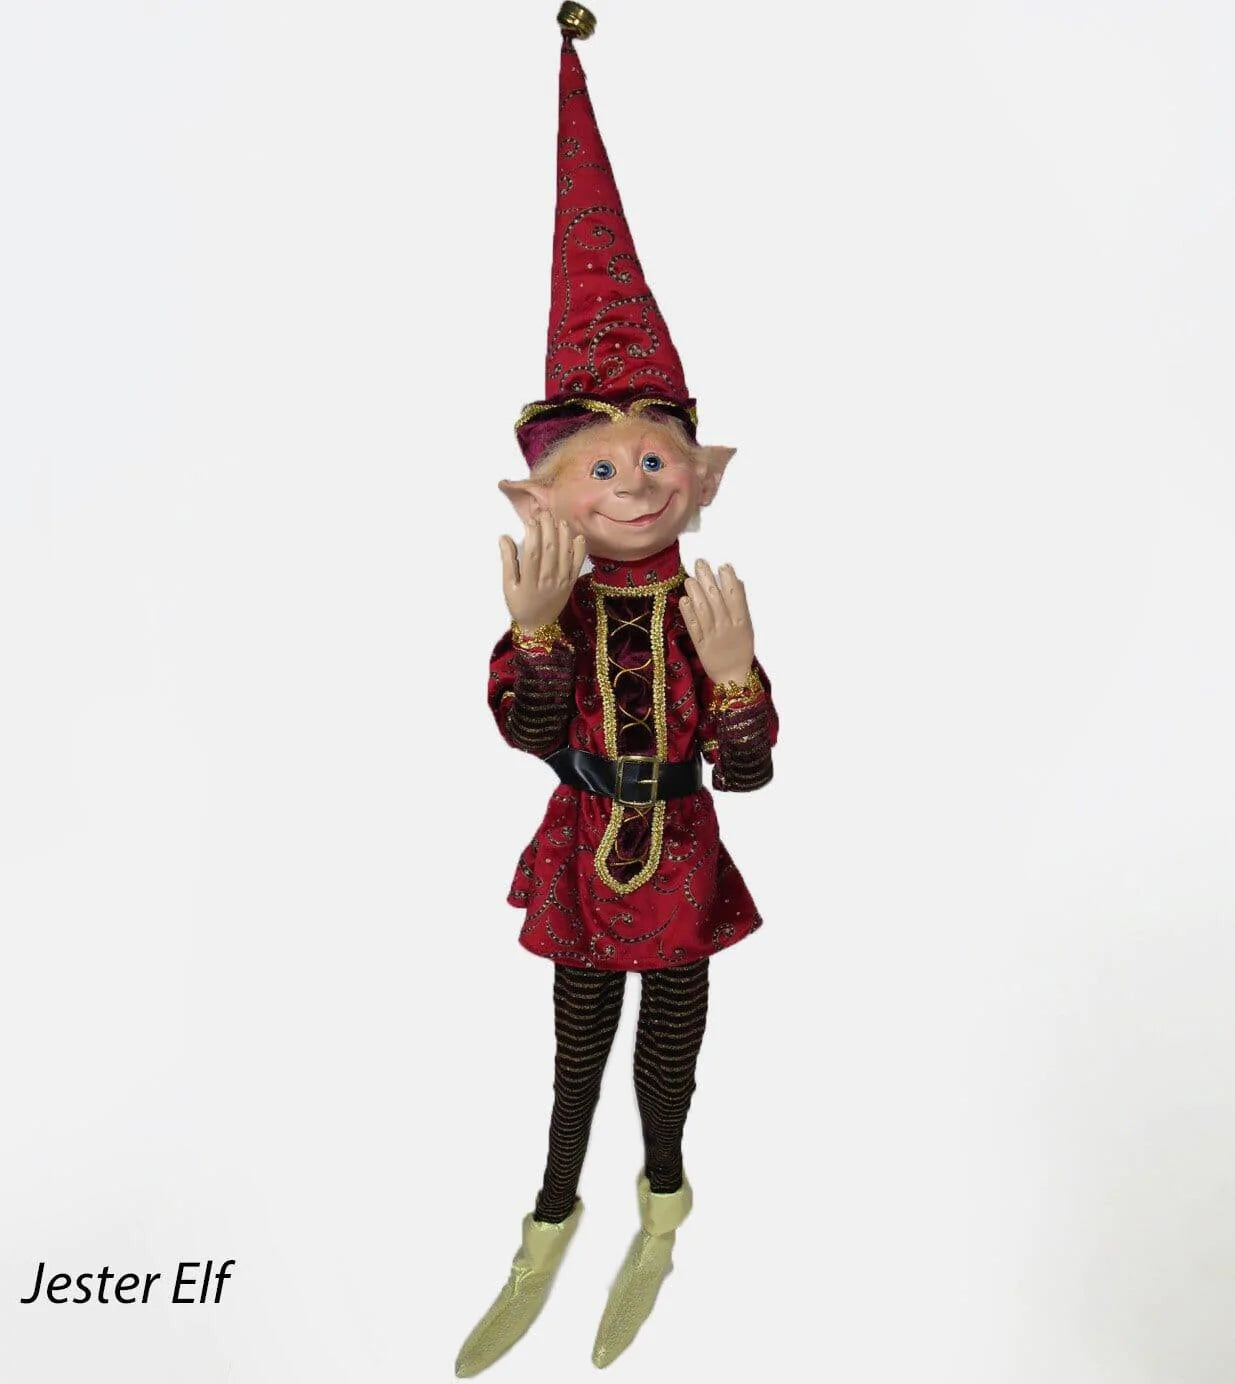 Jester Elf